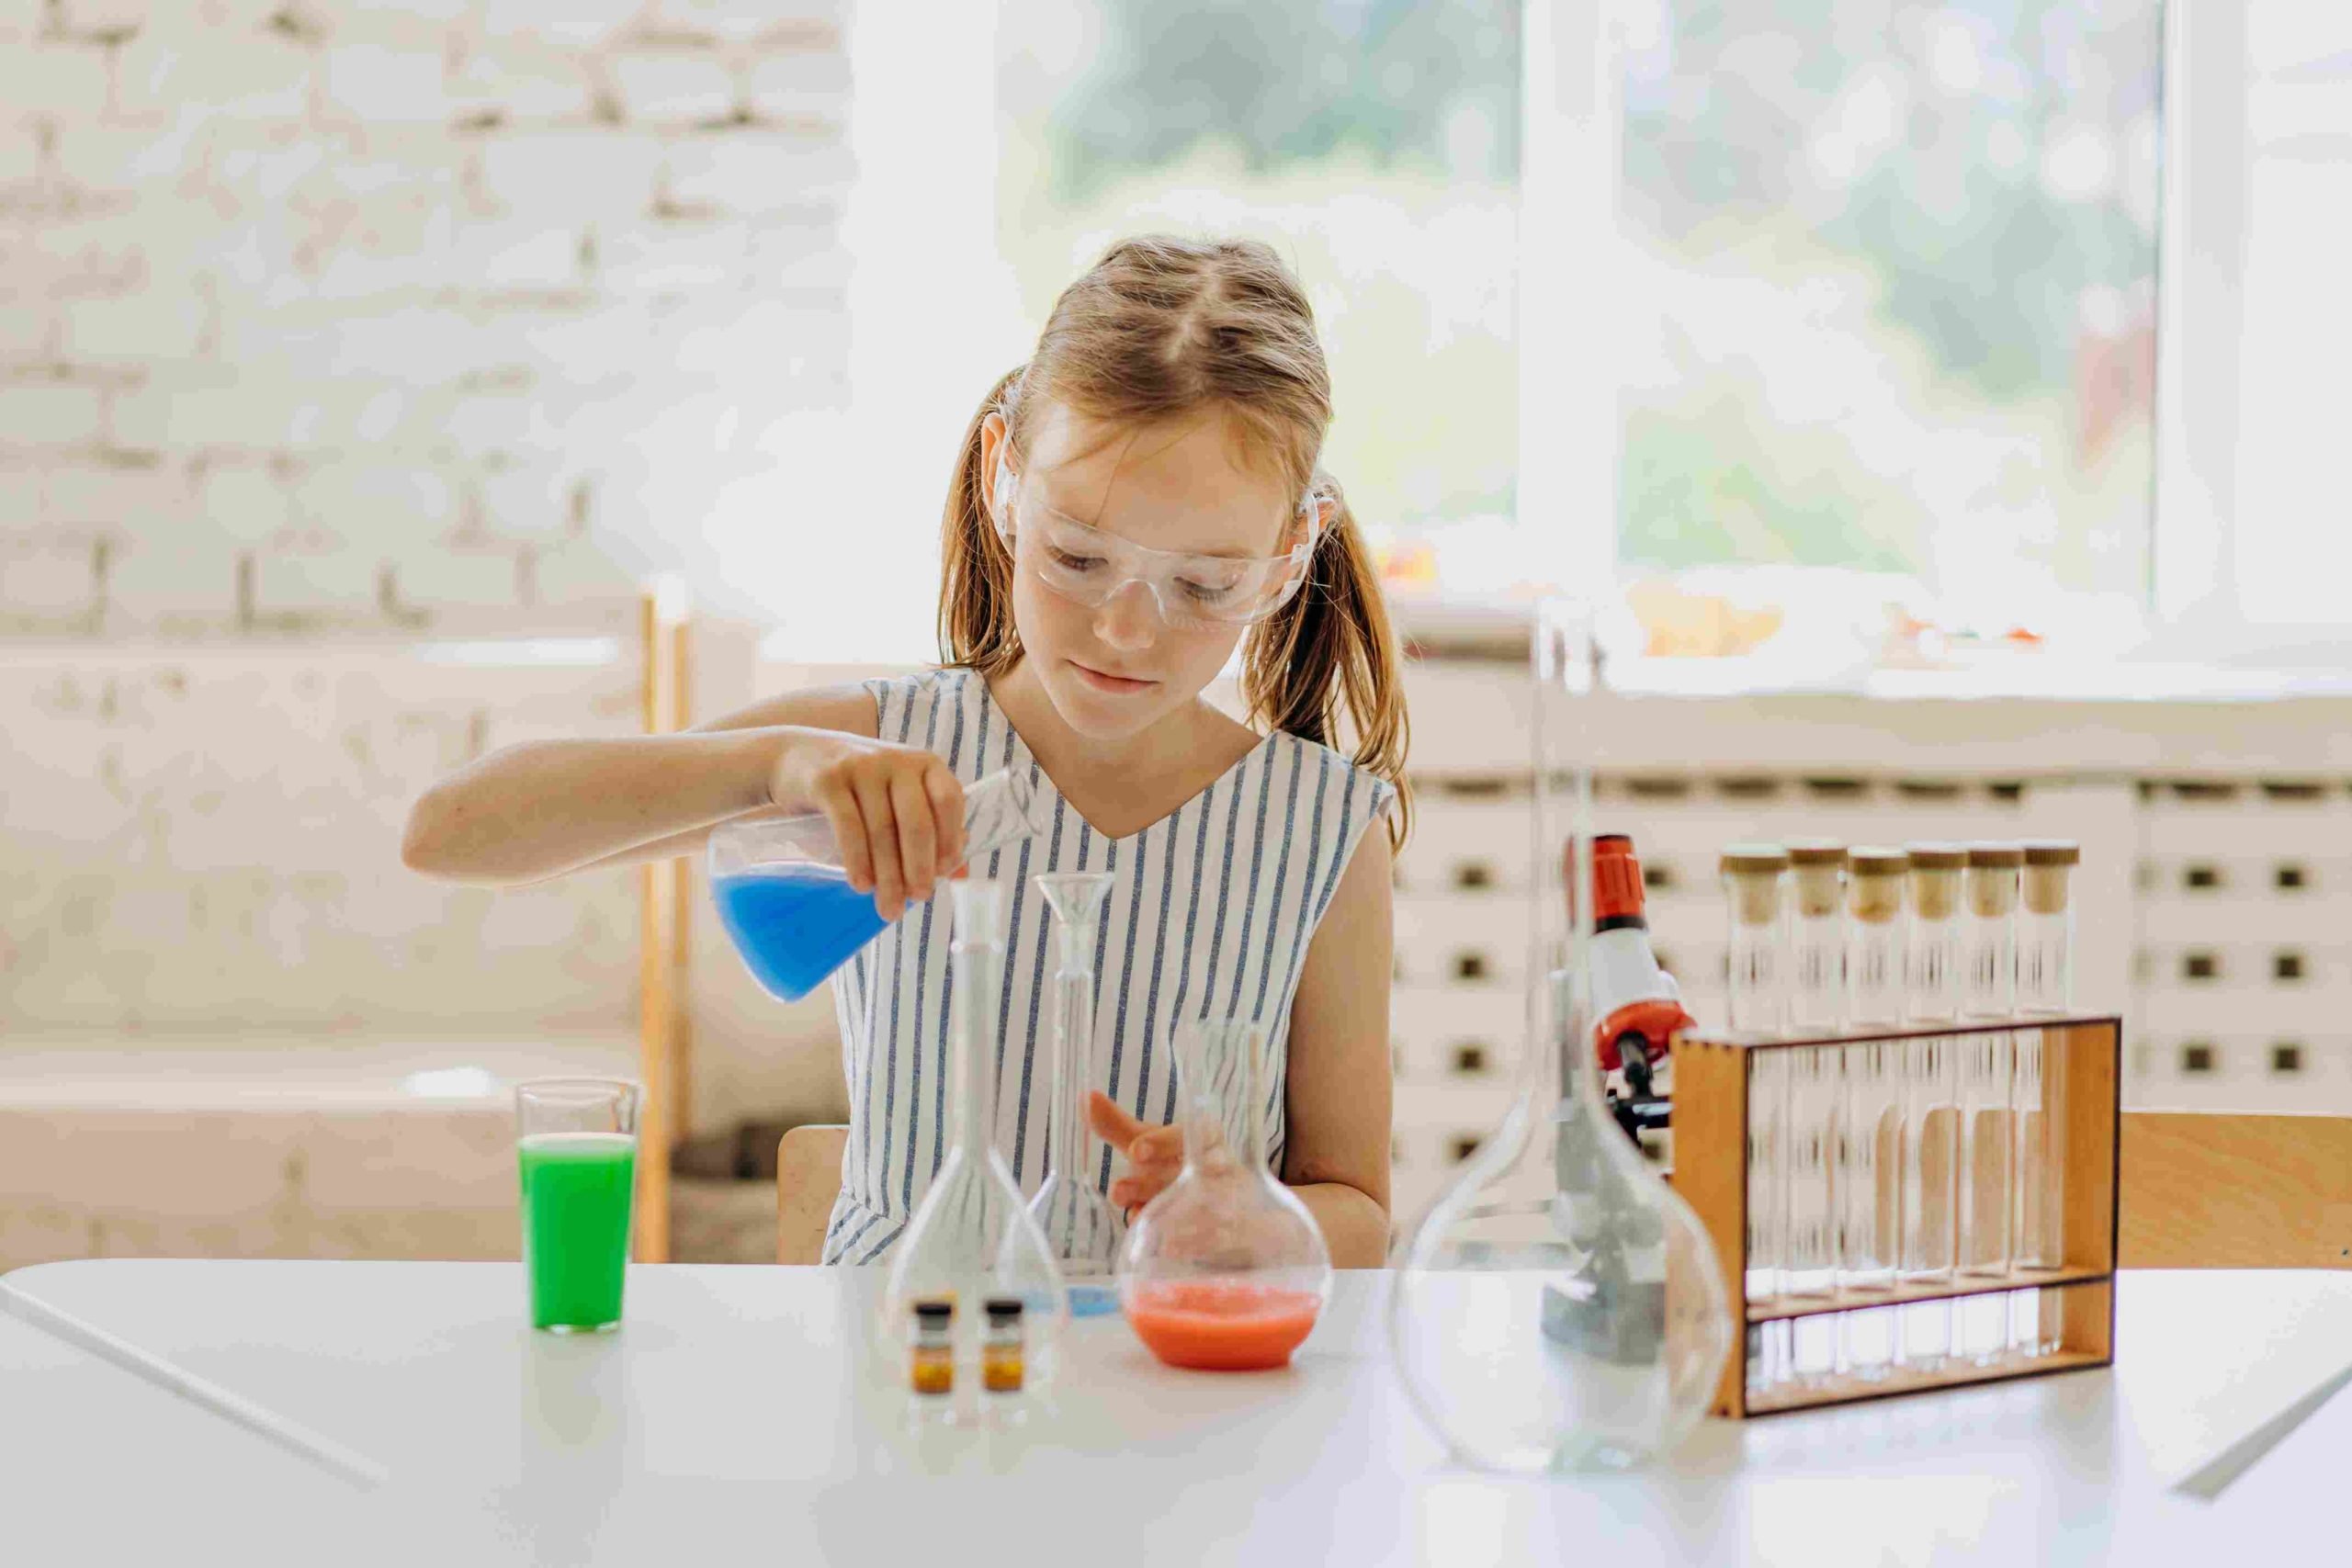 Comment intéresser mon enfant aux sciences?